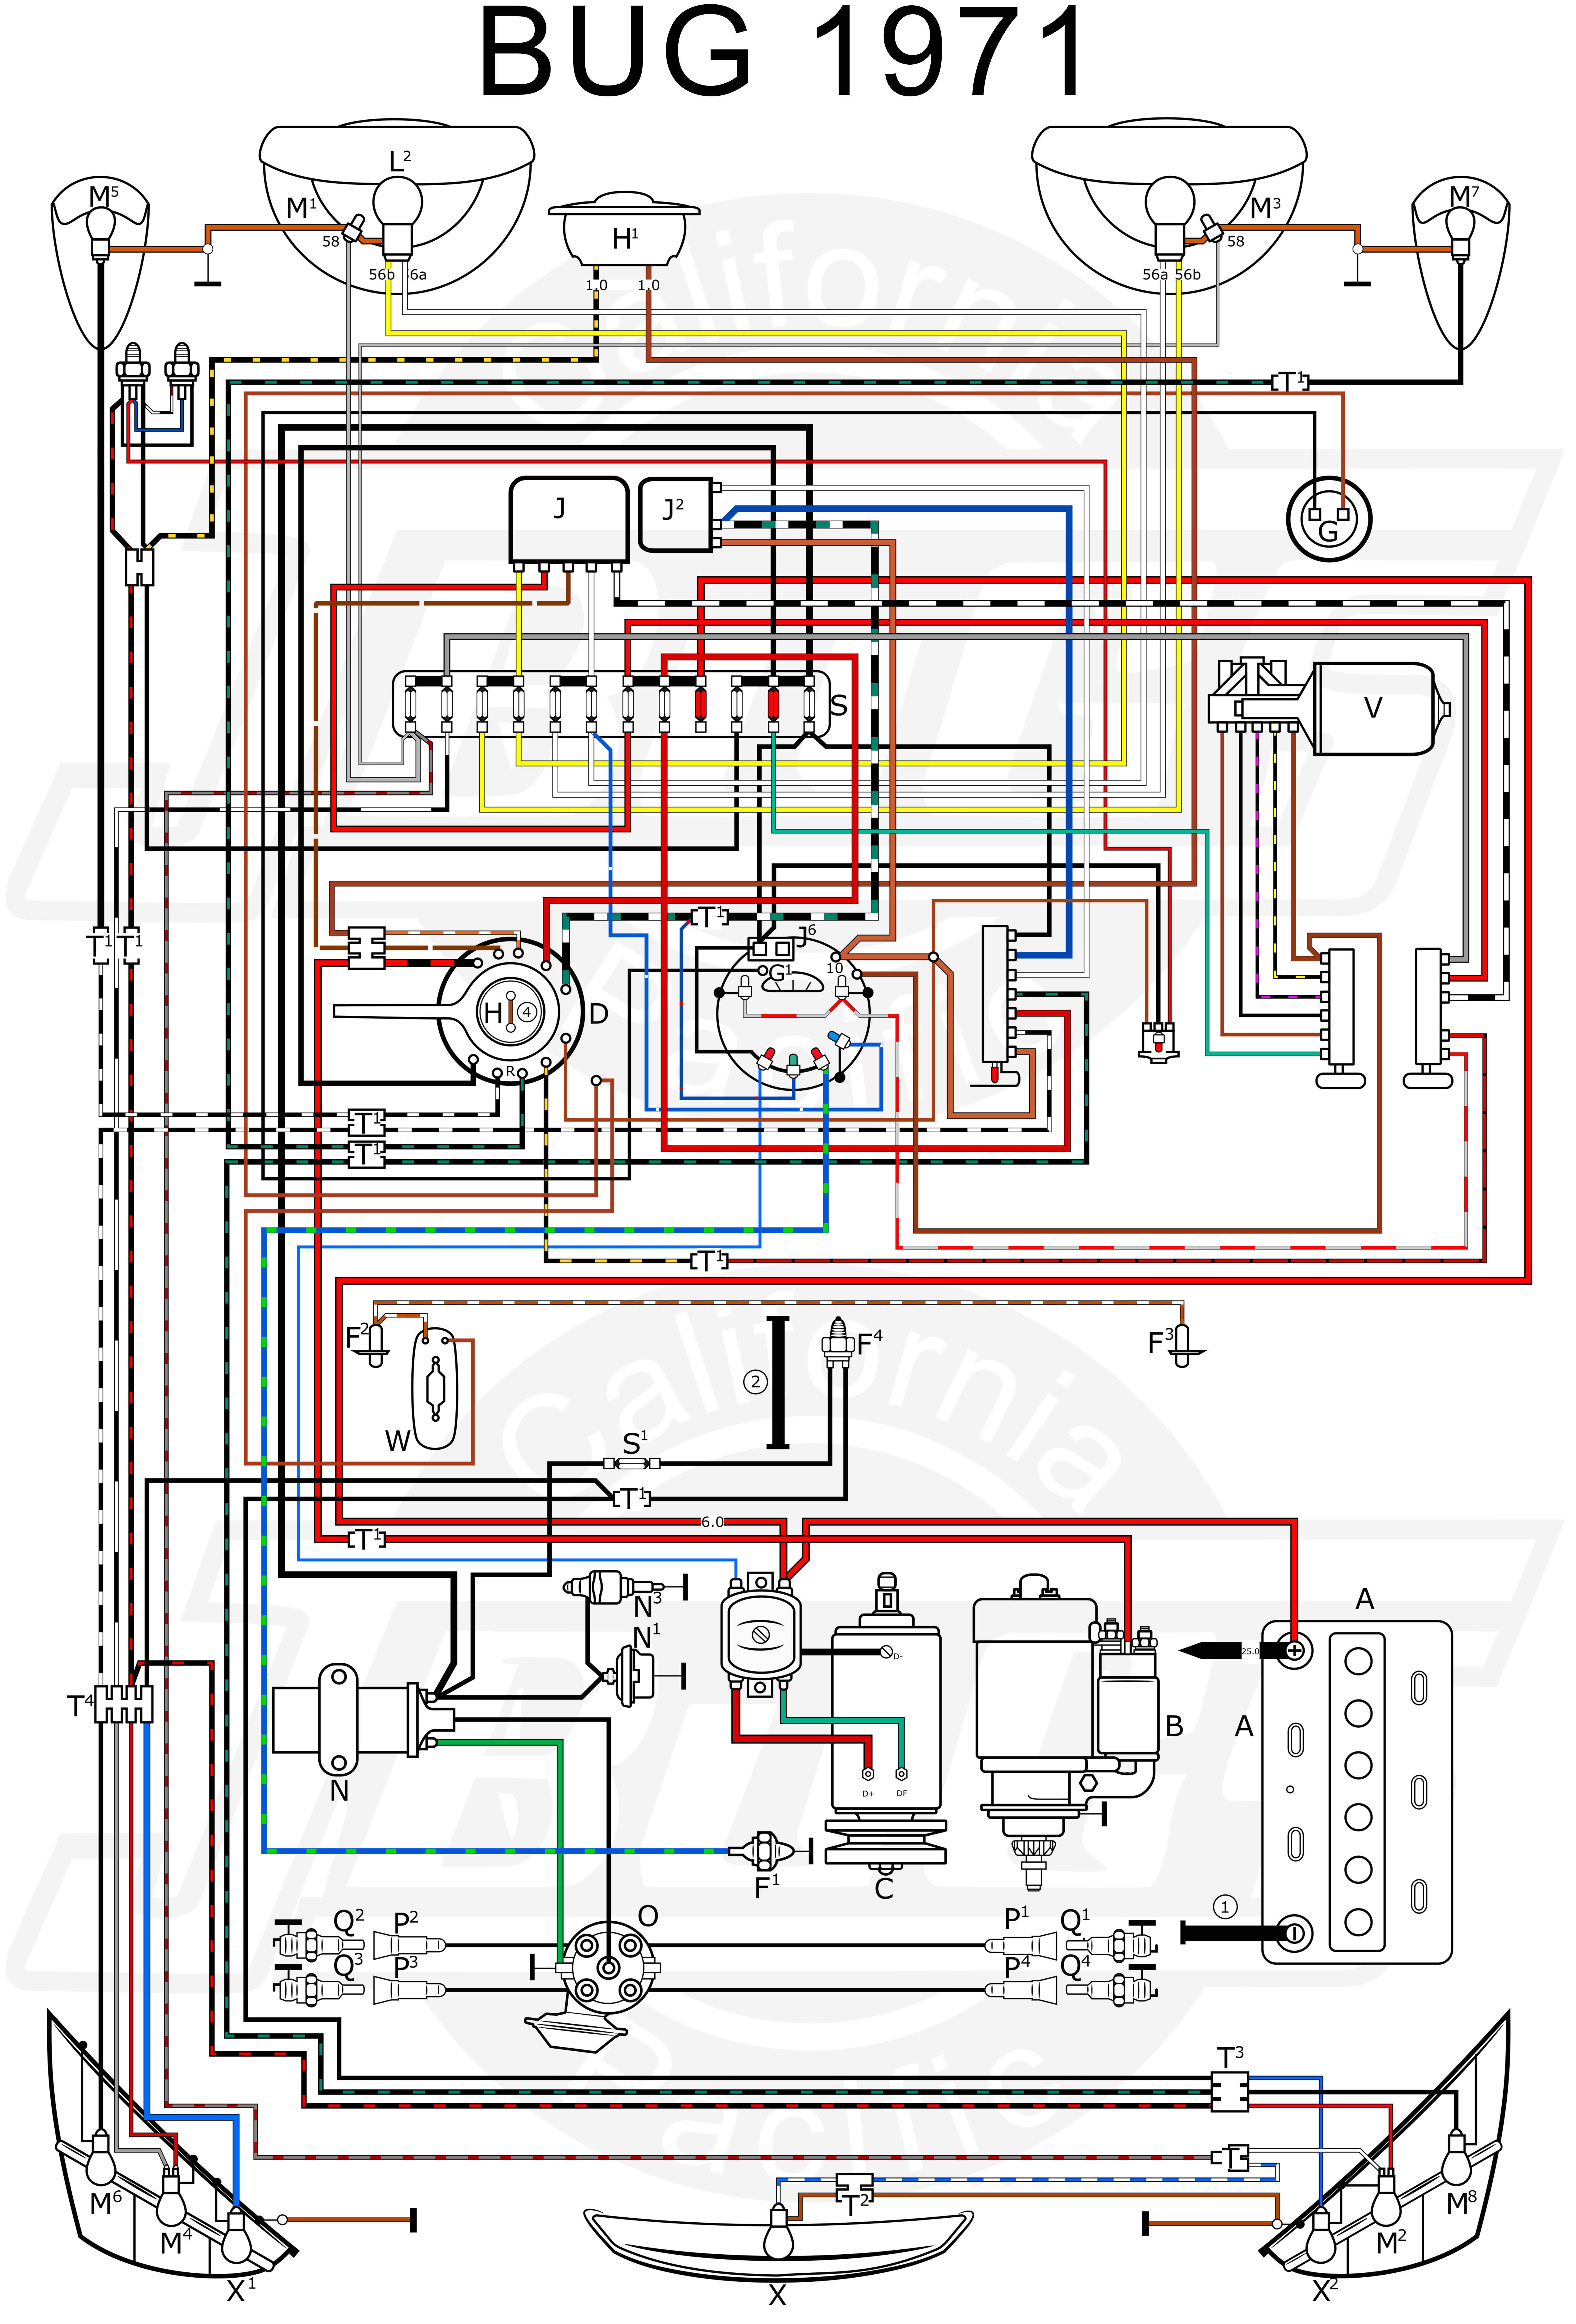 1972 super beetle wiring diagram wiring diagram blog 1972 vw super beetle wiring diagrams 1972 vw